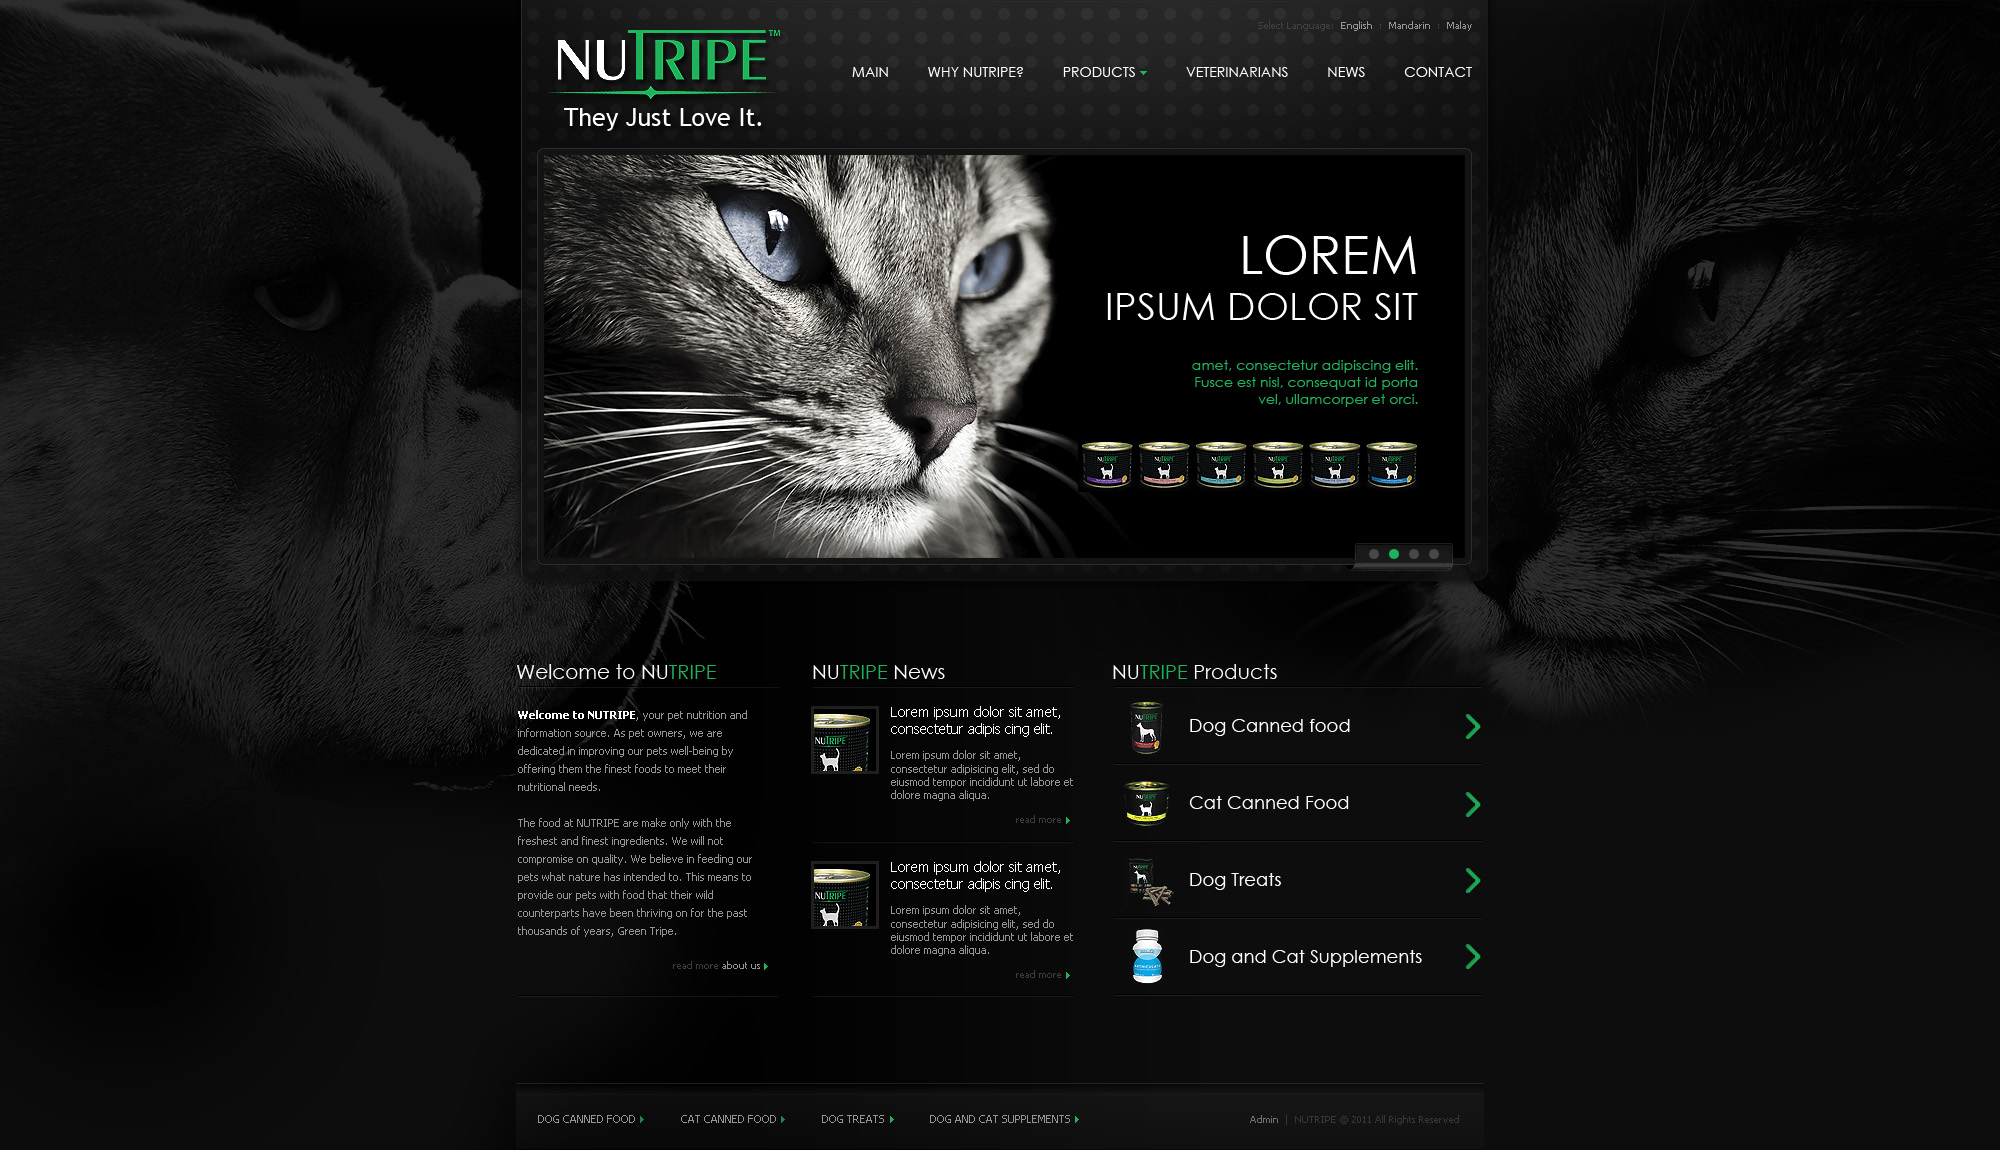 Web Design - Nutripe